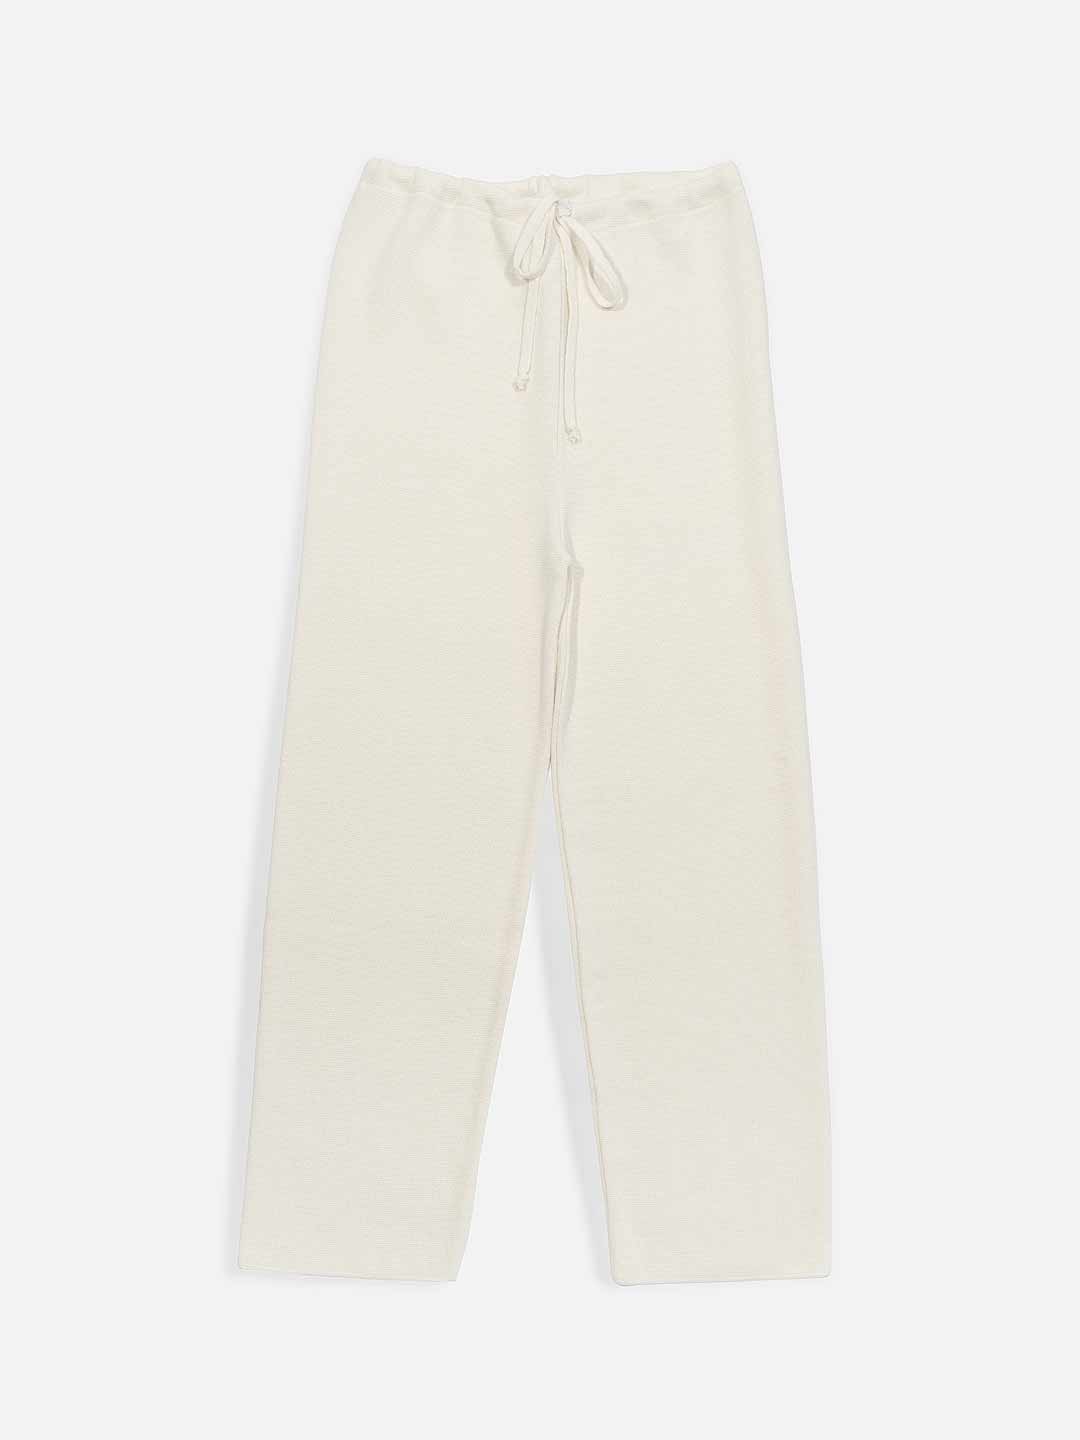 Plain pants with Merino wool ties